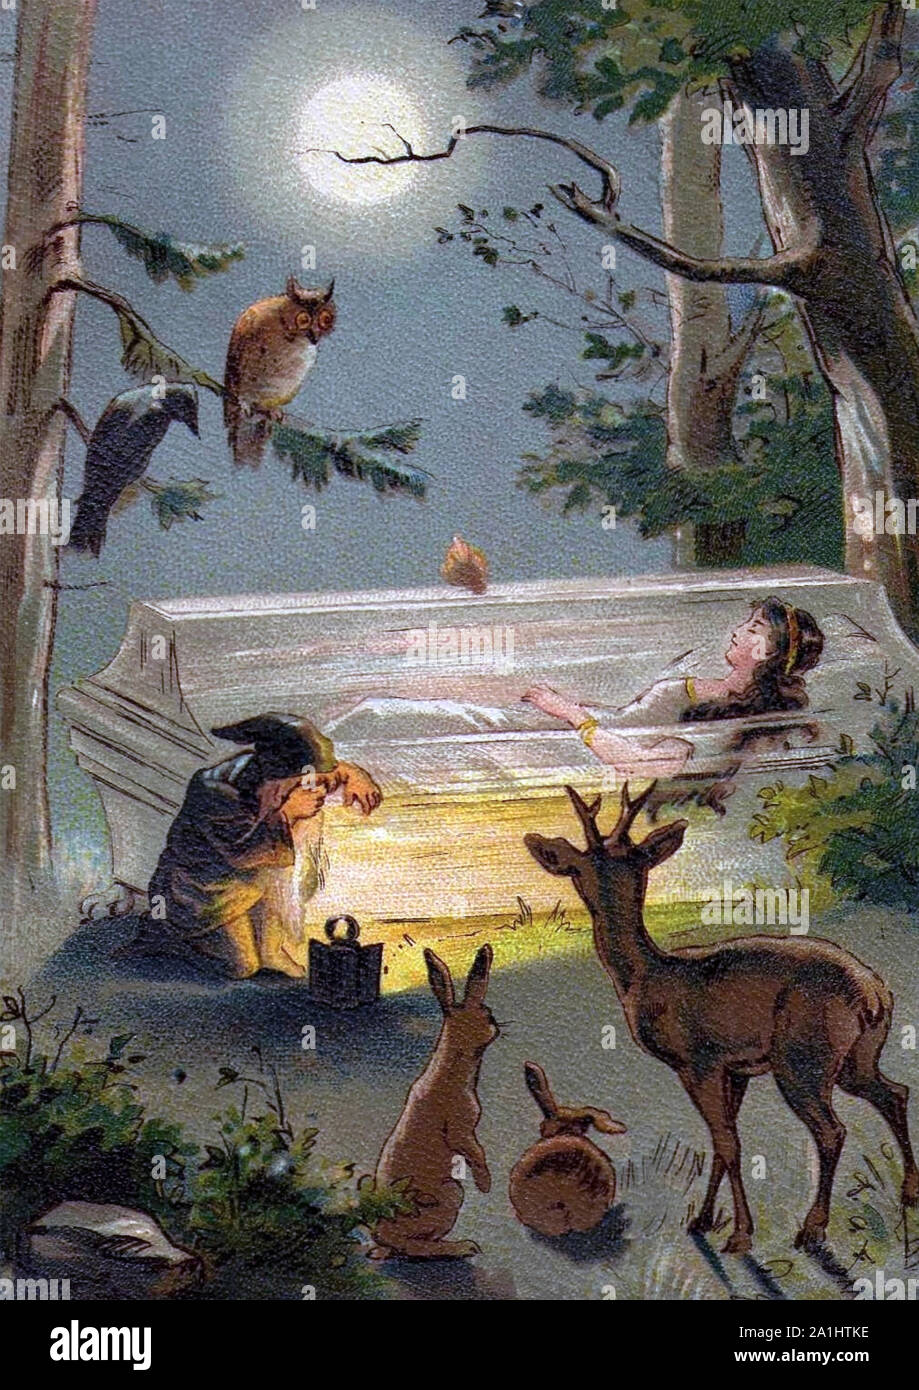 Conte de fées de la Belle au bois dormant dans une illustration vers 1890 Banque D'Images